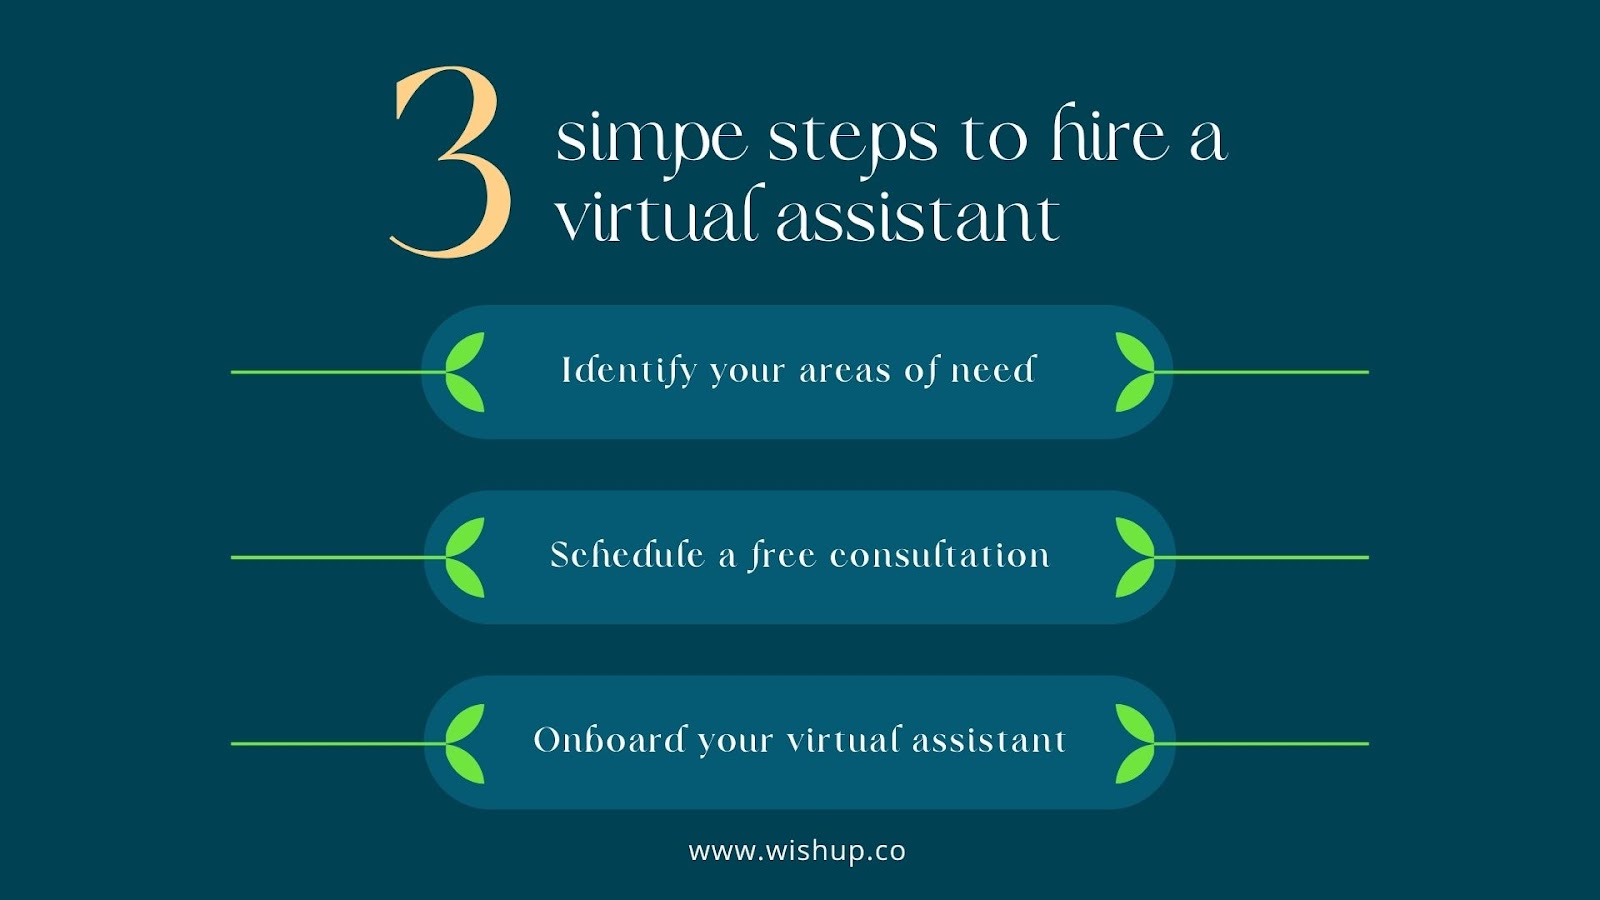 Virtual assistant hiring process at Wishup